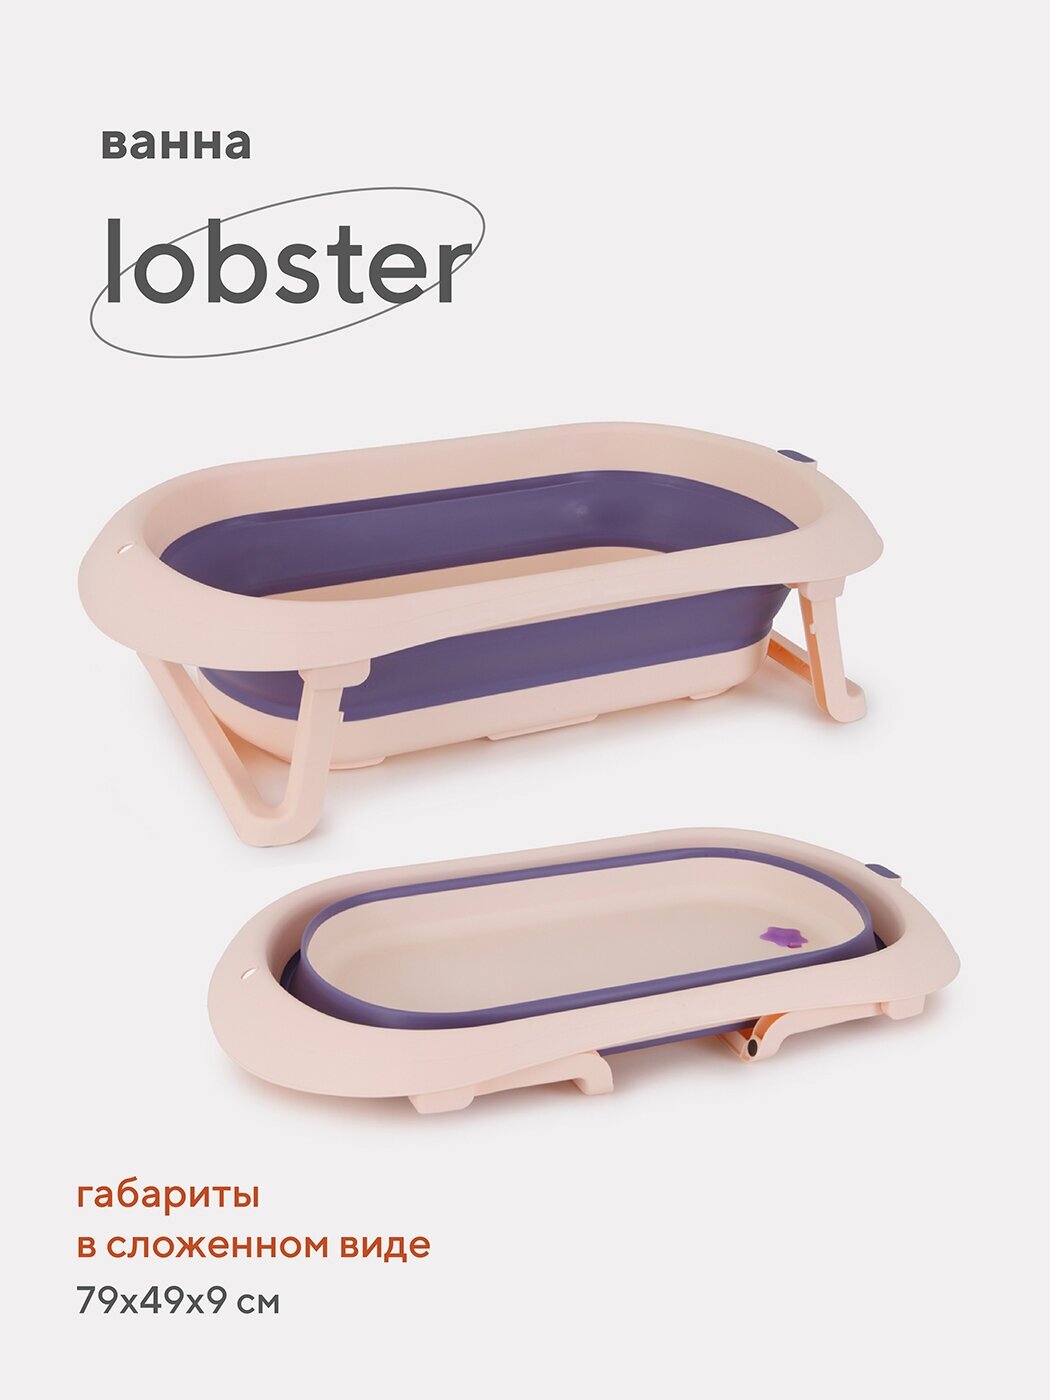 Складная ванночка Rant Lobster детская для купания новорожденных, младенцев со сливом арт. RBT001, Pink & Lavender